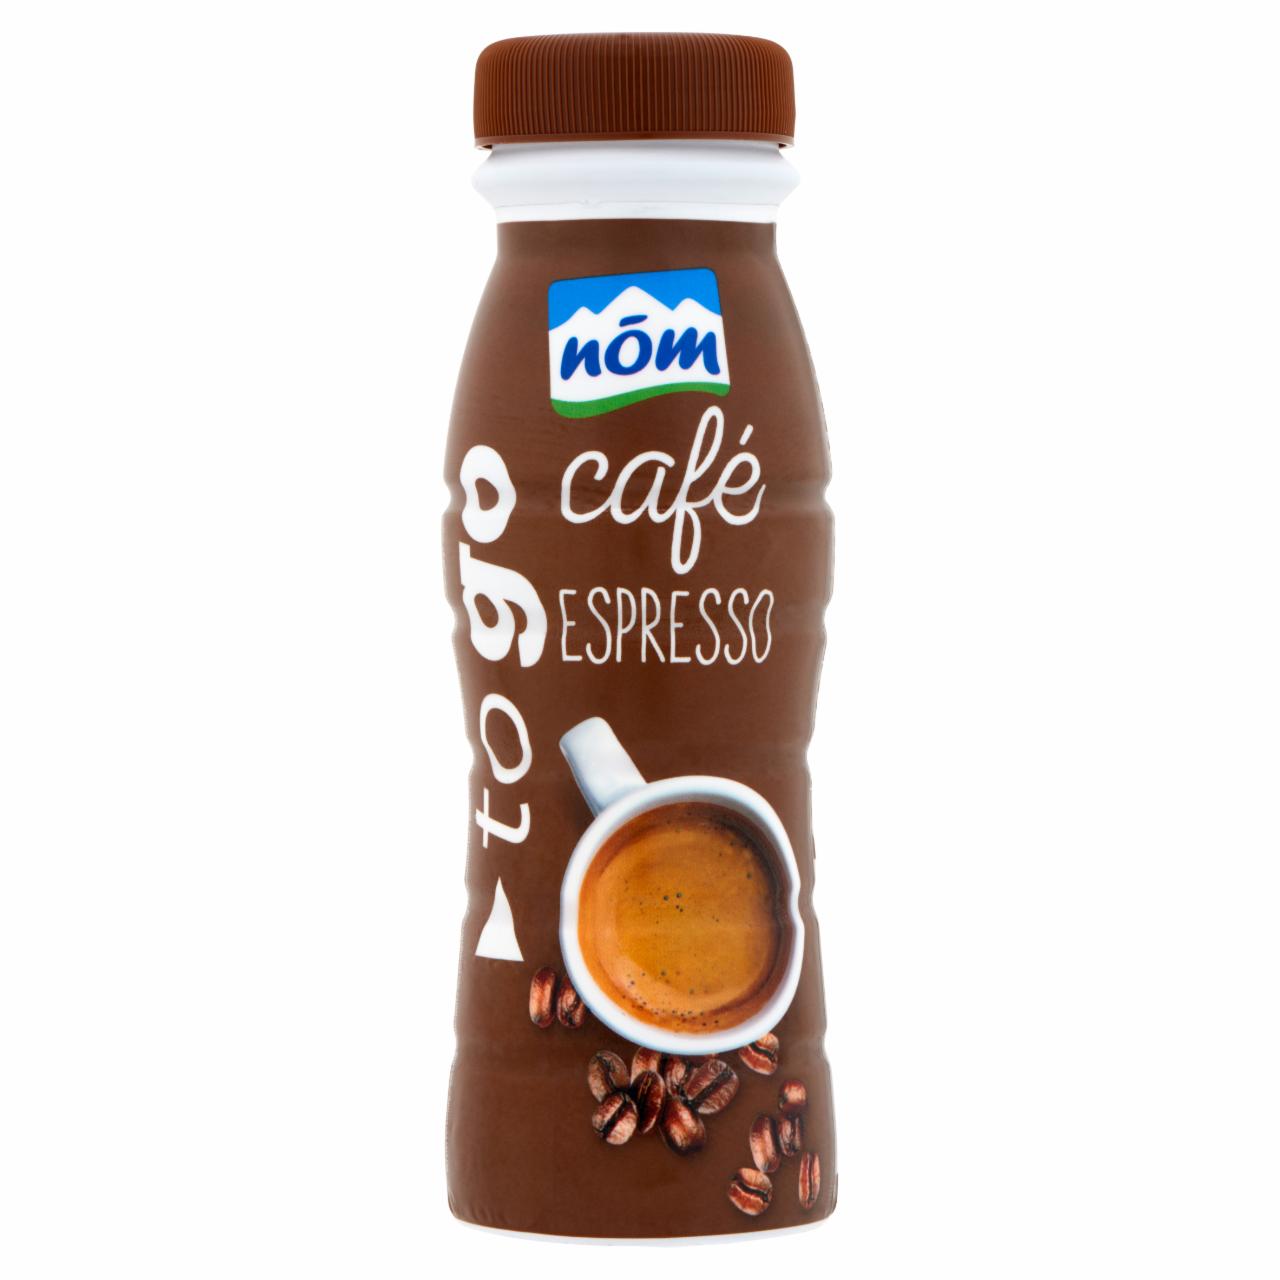 Képek - nöm Espresso kávés tejkészítmény 250 ml